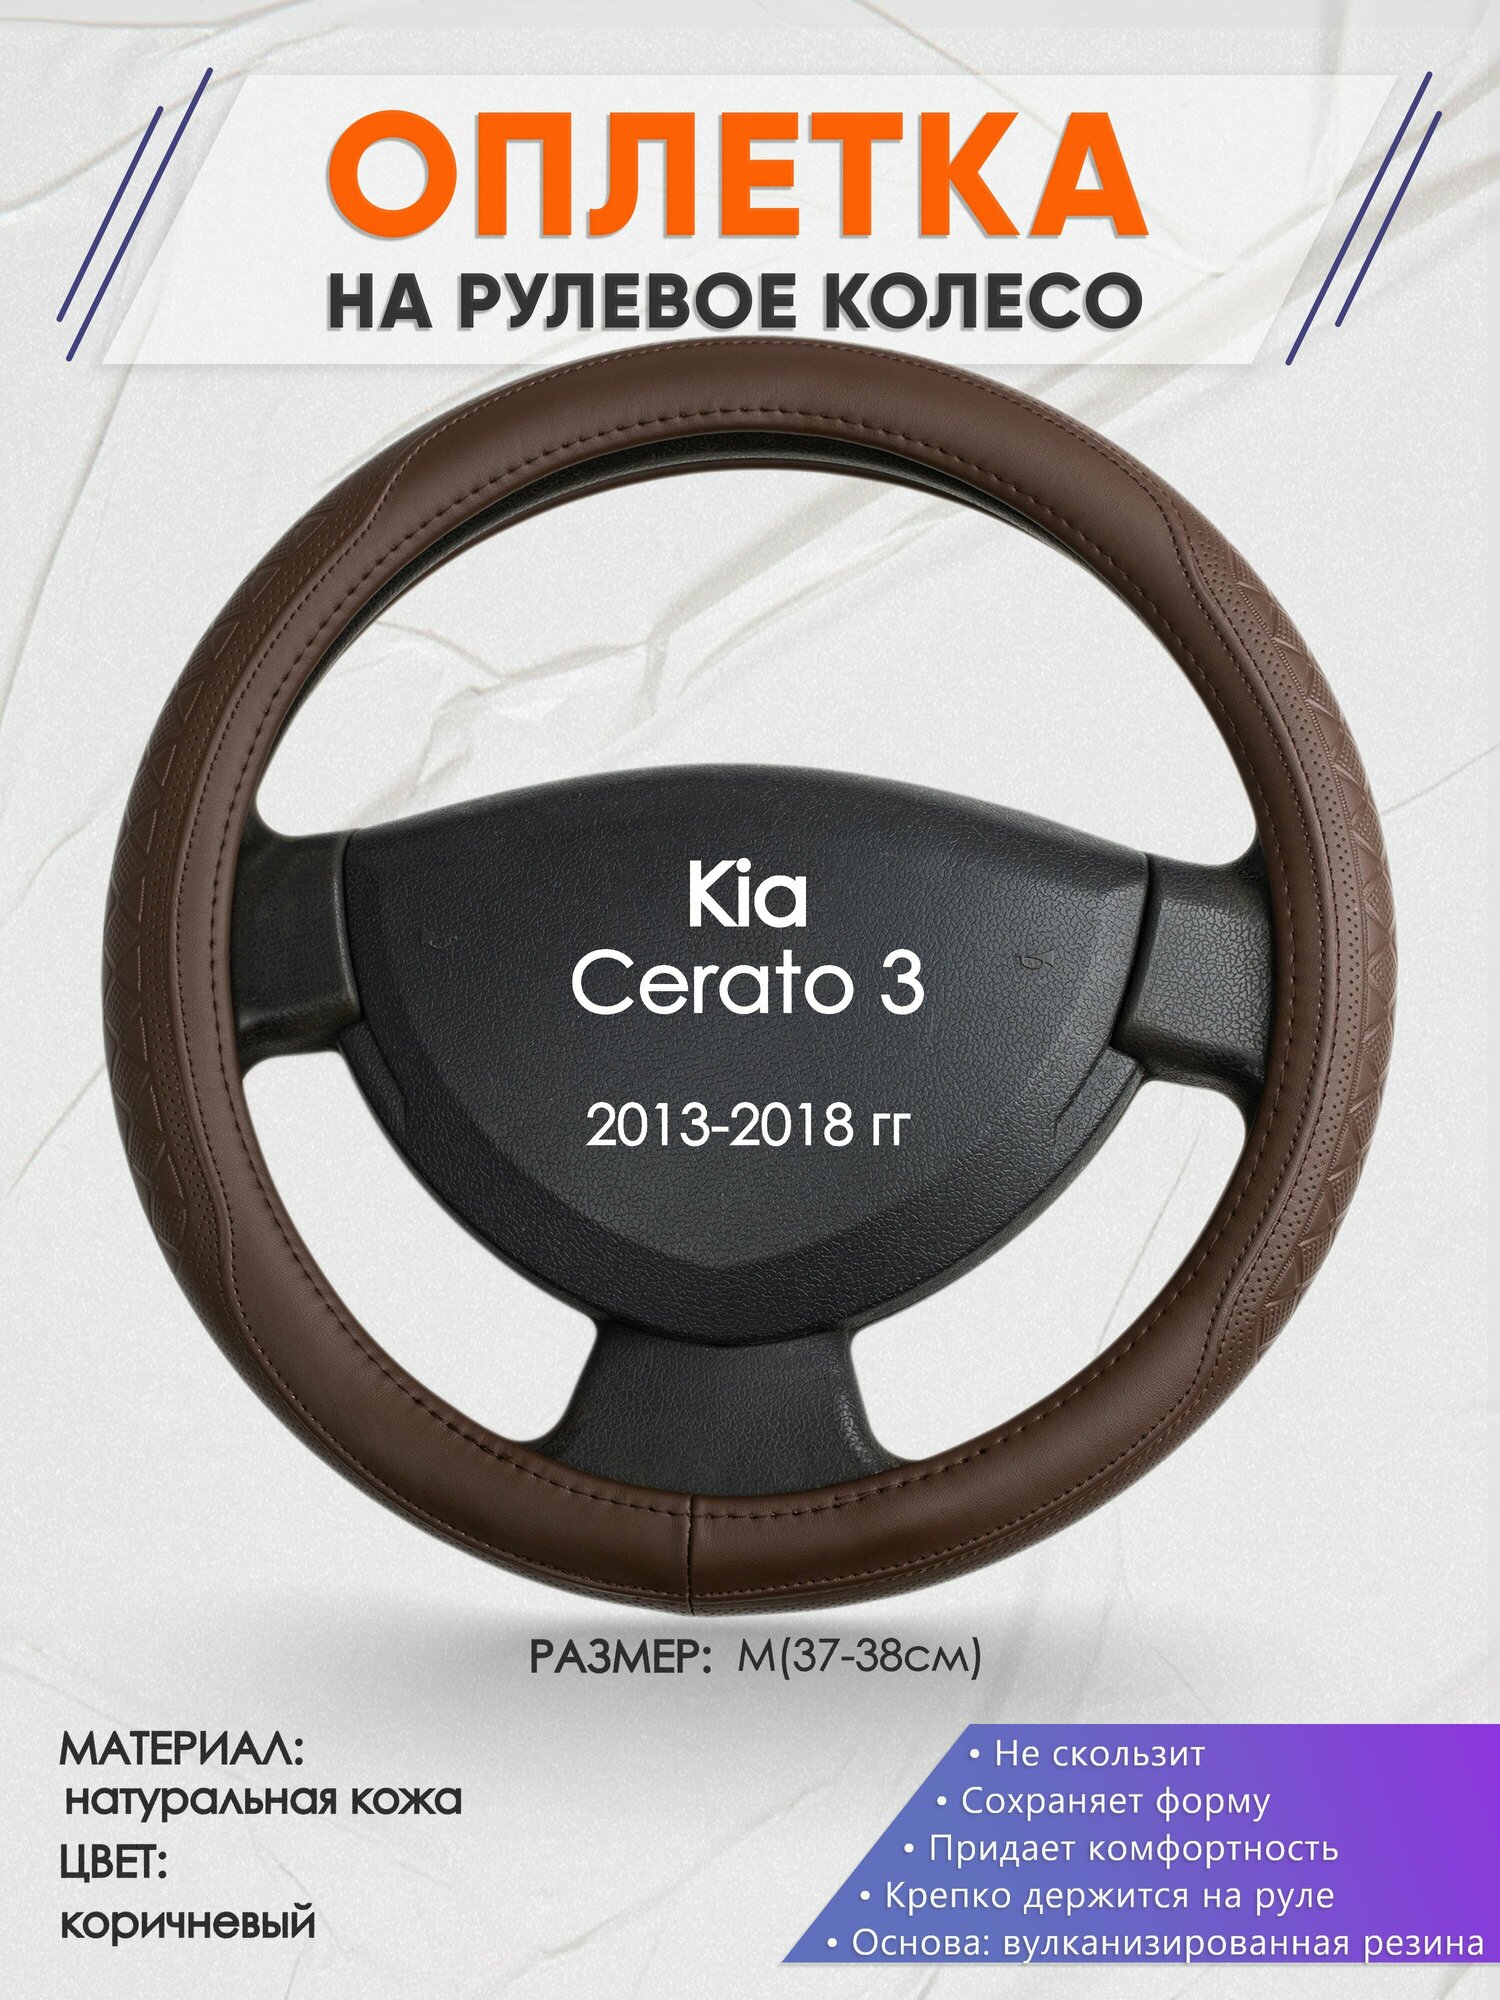 Оплетка на руль для Kia Cerato 3(Киа Церато 3) 2013-2018 M(37-38см) Натуральная кожа 32